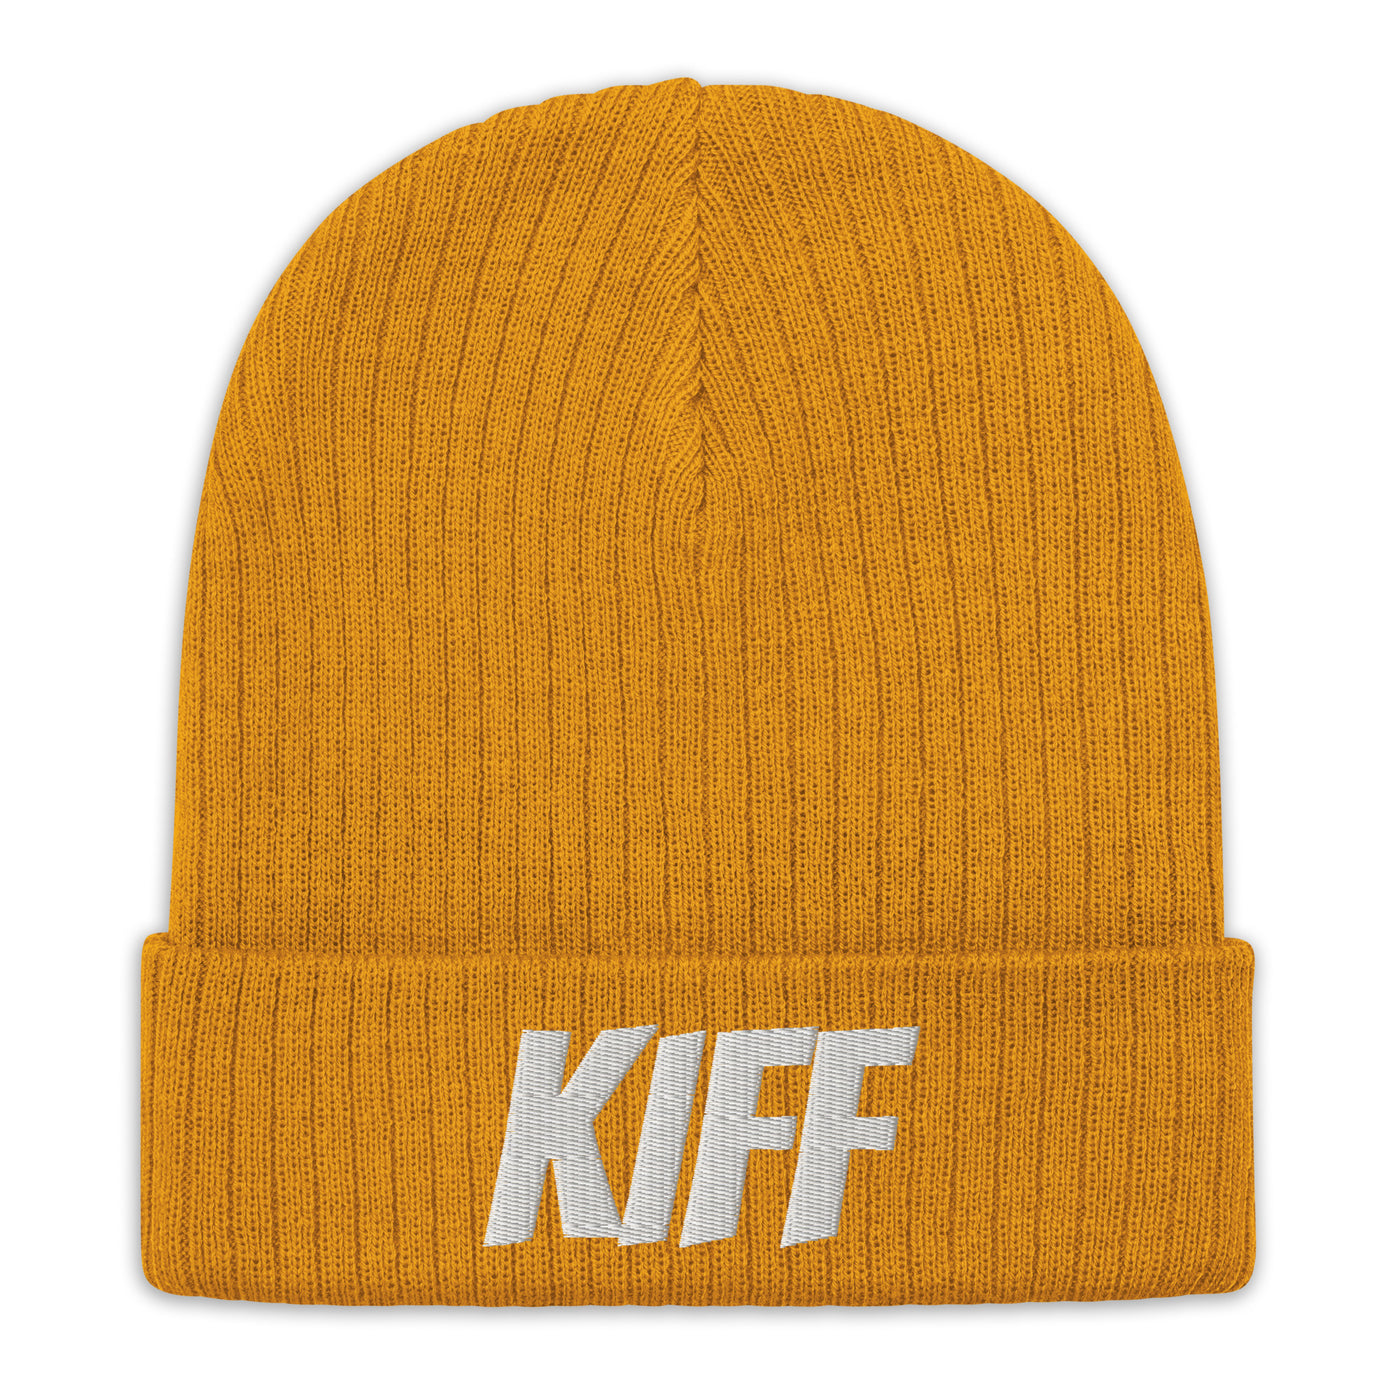 Kiff warm hat